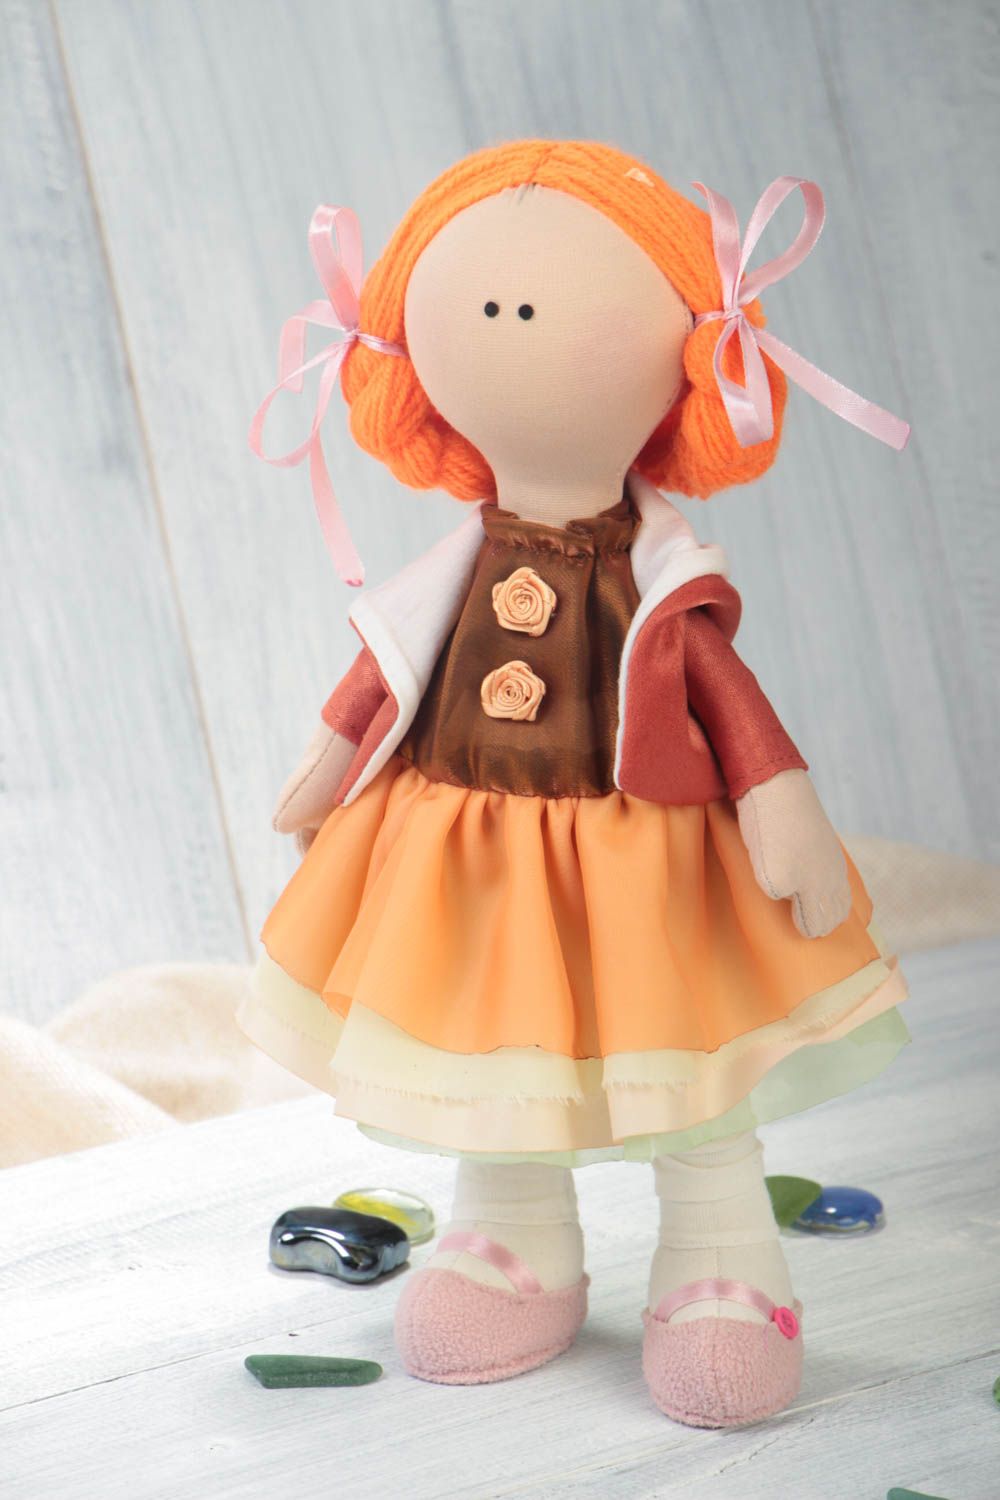 Handmade Designer Puppe in orange Kleidung Stoff Spielzeug schöne Puppe foto 1